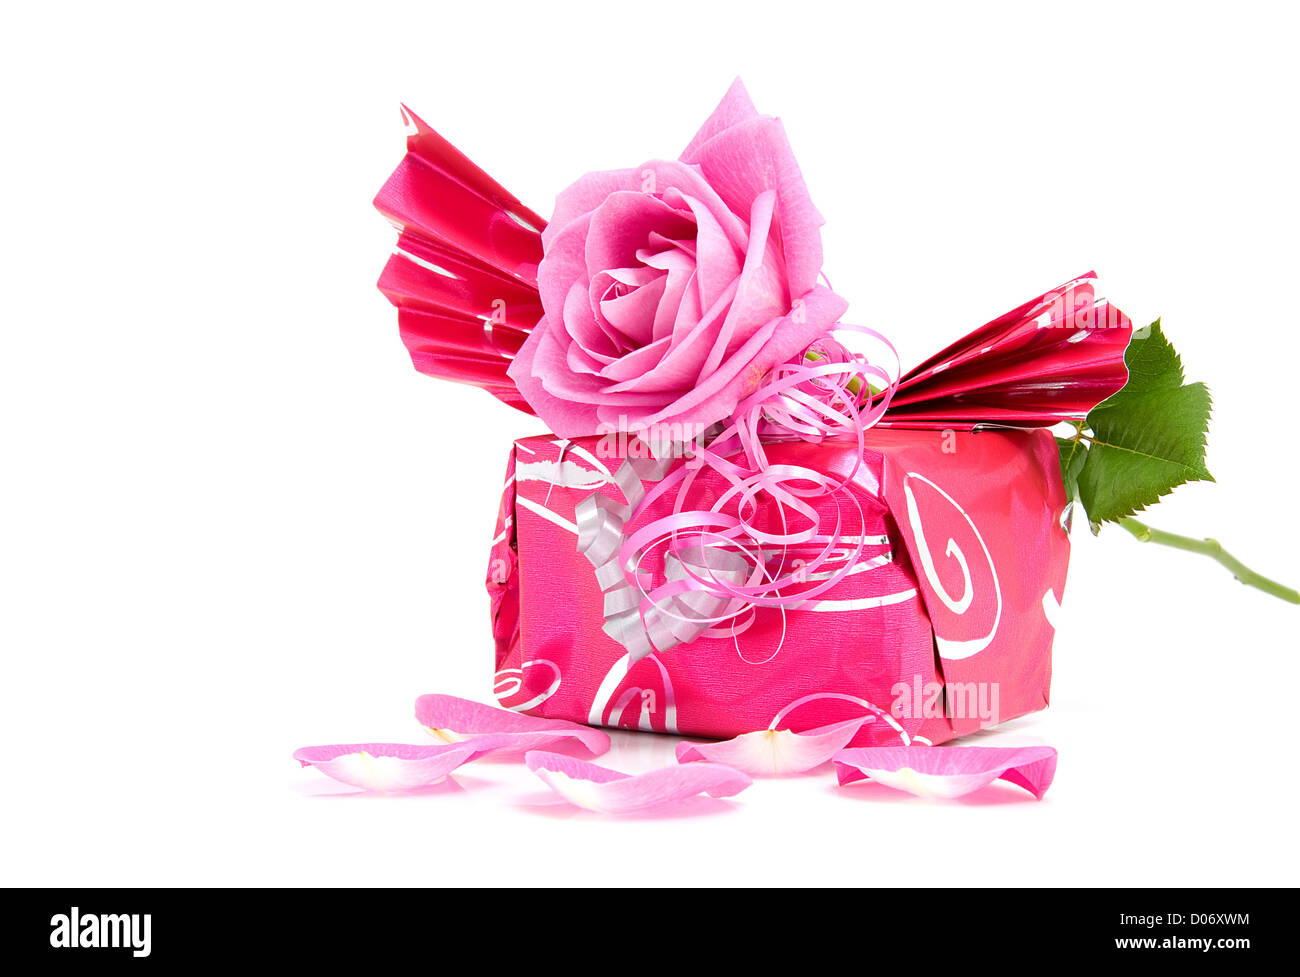 Beau cadeau enveloppé avec rose pour un anniversaire ou la Saint-Valentin  sur fond blanc Photo Stock - Alamy